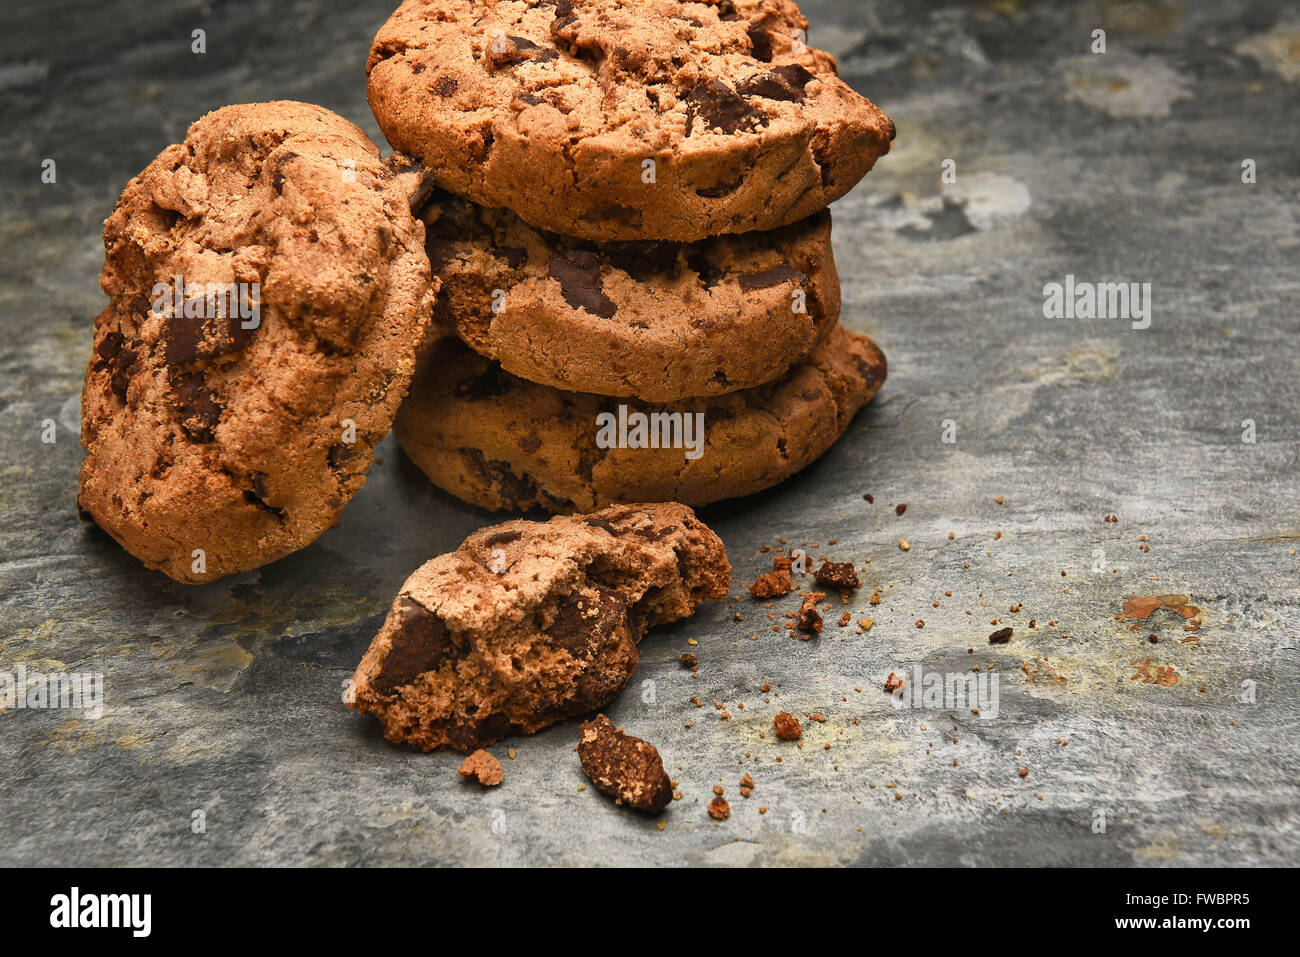 Libre d'une pile de cookies aux pépites de chocolat sur une surface en ardoise. Format horizontal avec l'exemplaire de l'espace. Banque D'Images